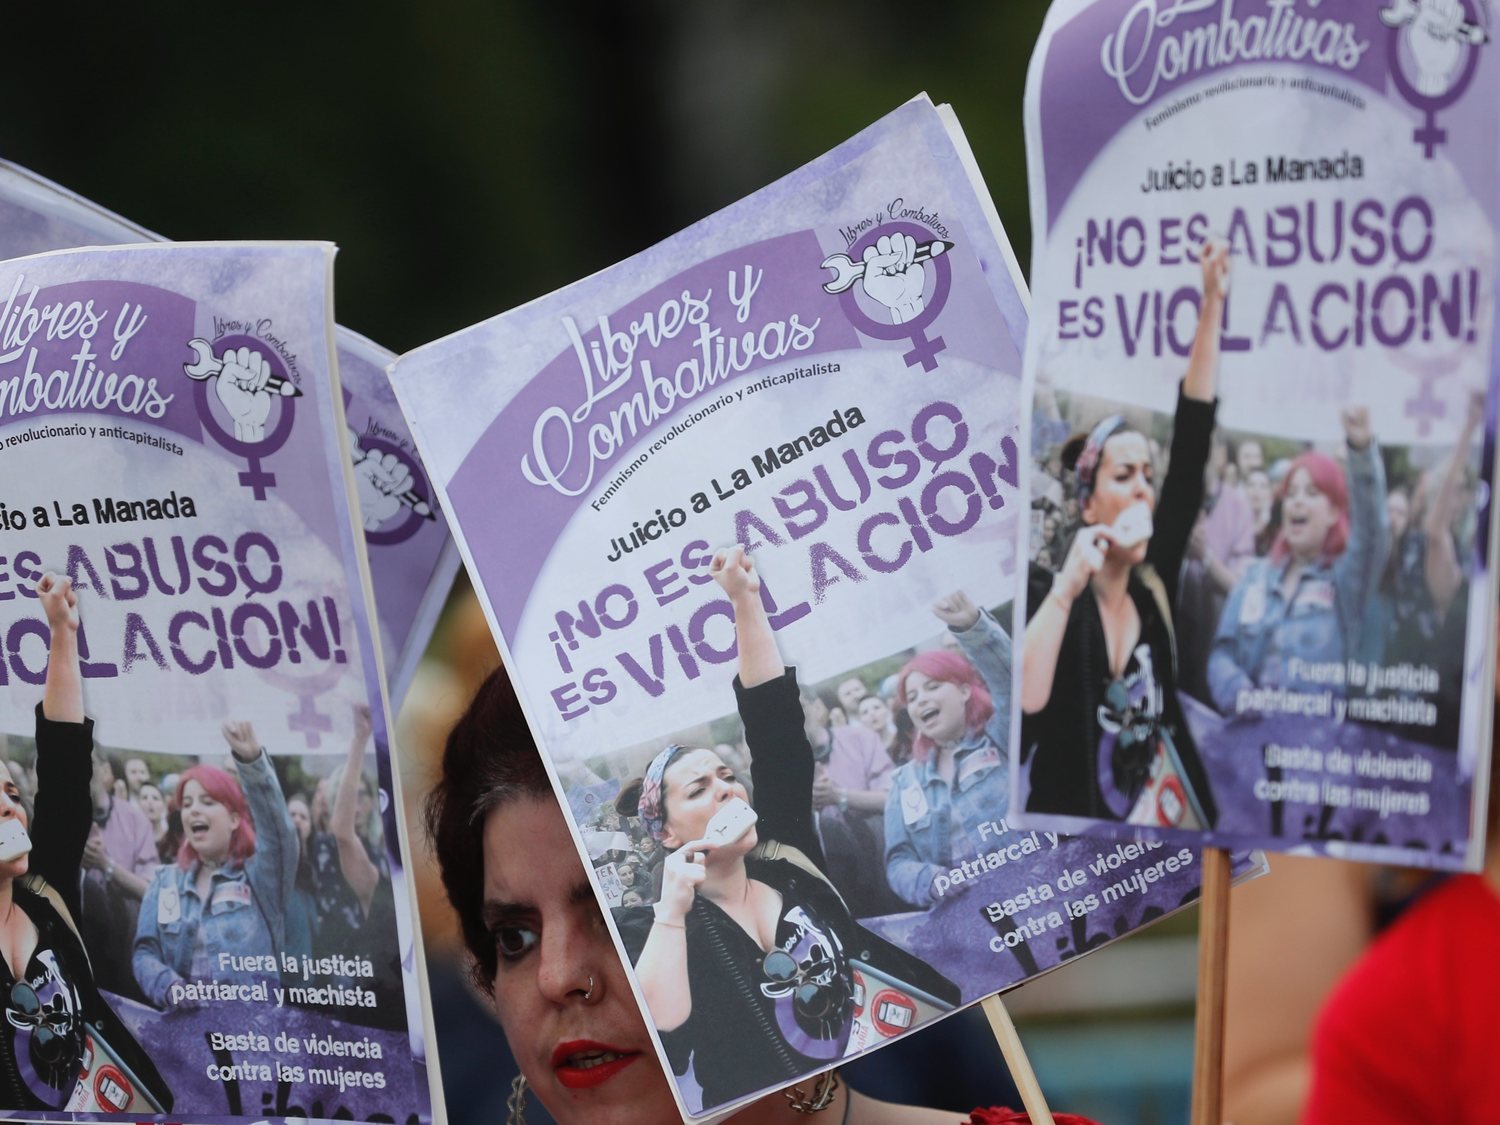 Más de 100 violaciones "en manada" registradas en España en los últimos tres años